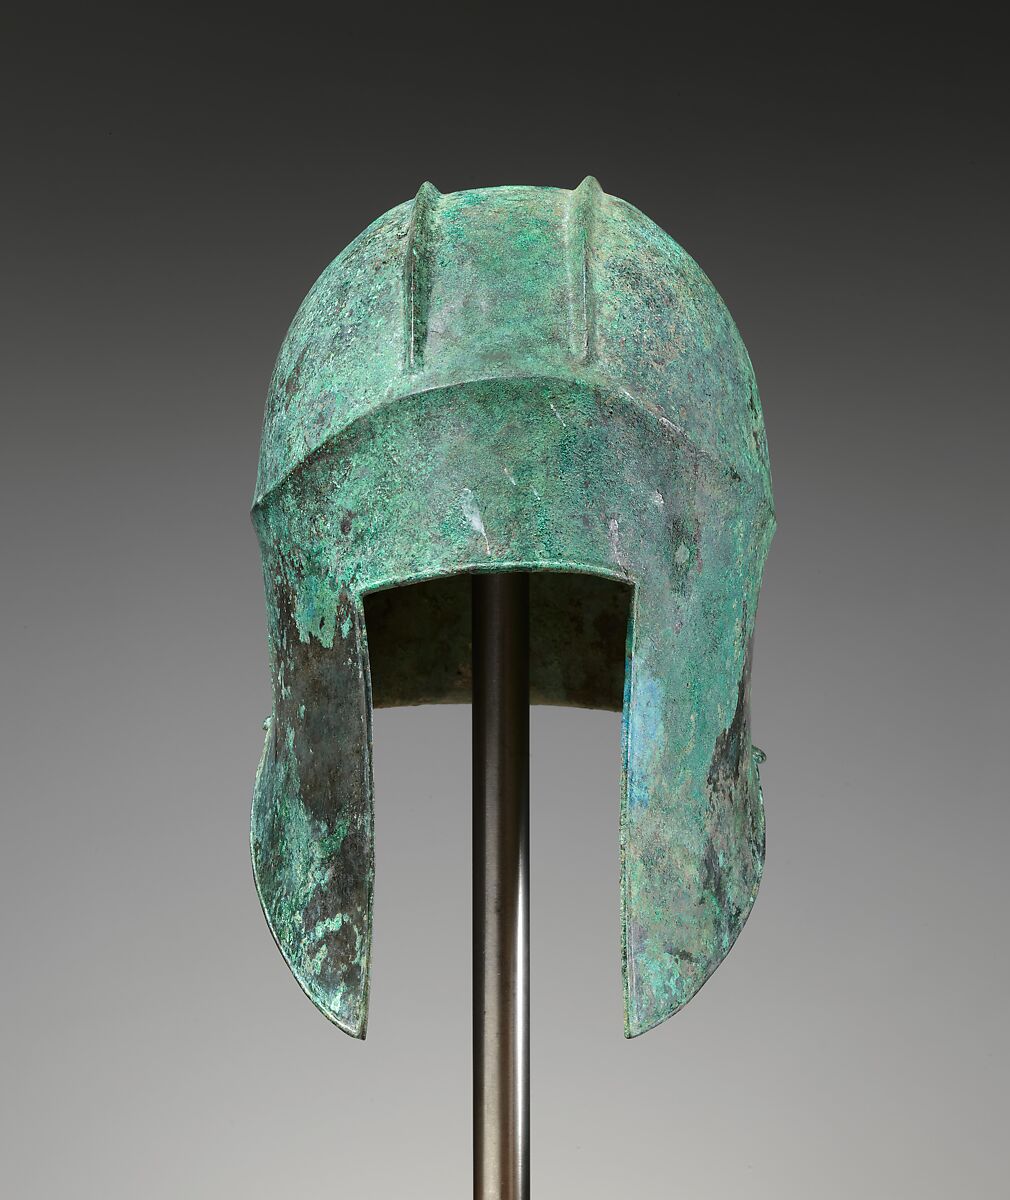 Bronze helmet of Illyrian type, Bronze, Greek 